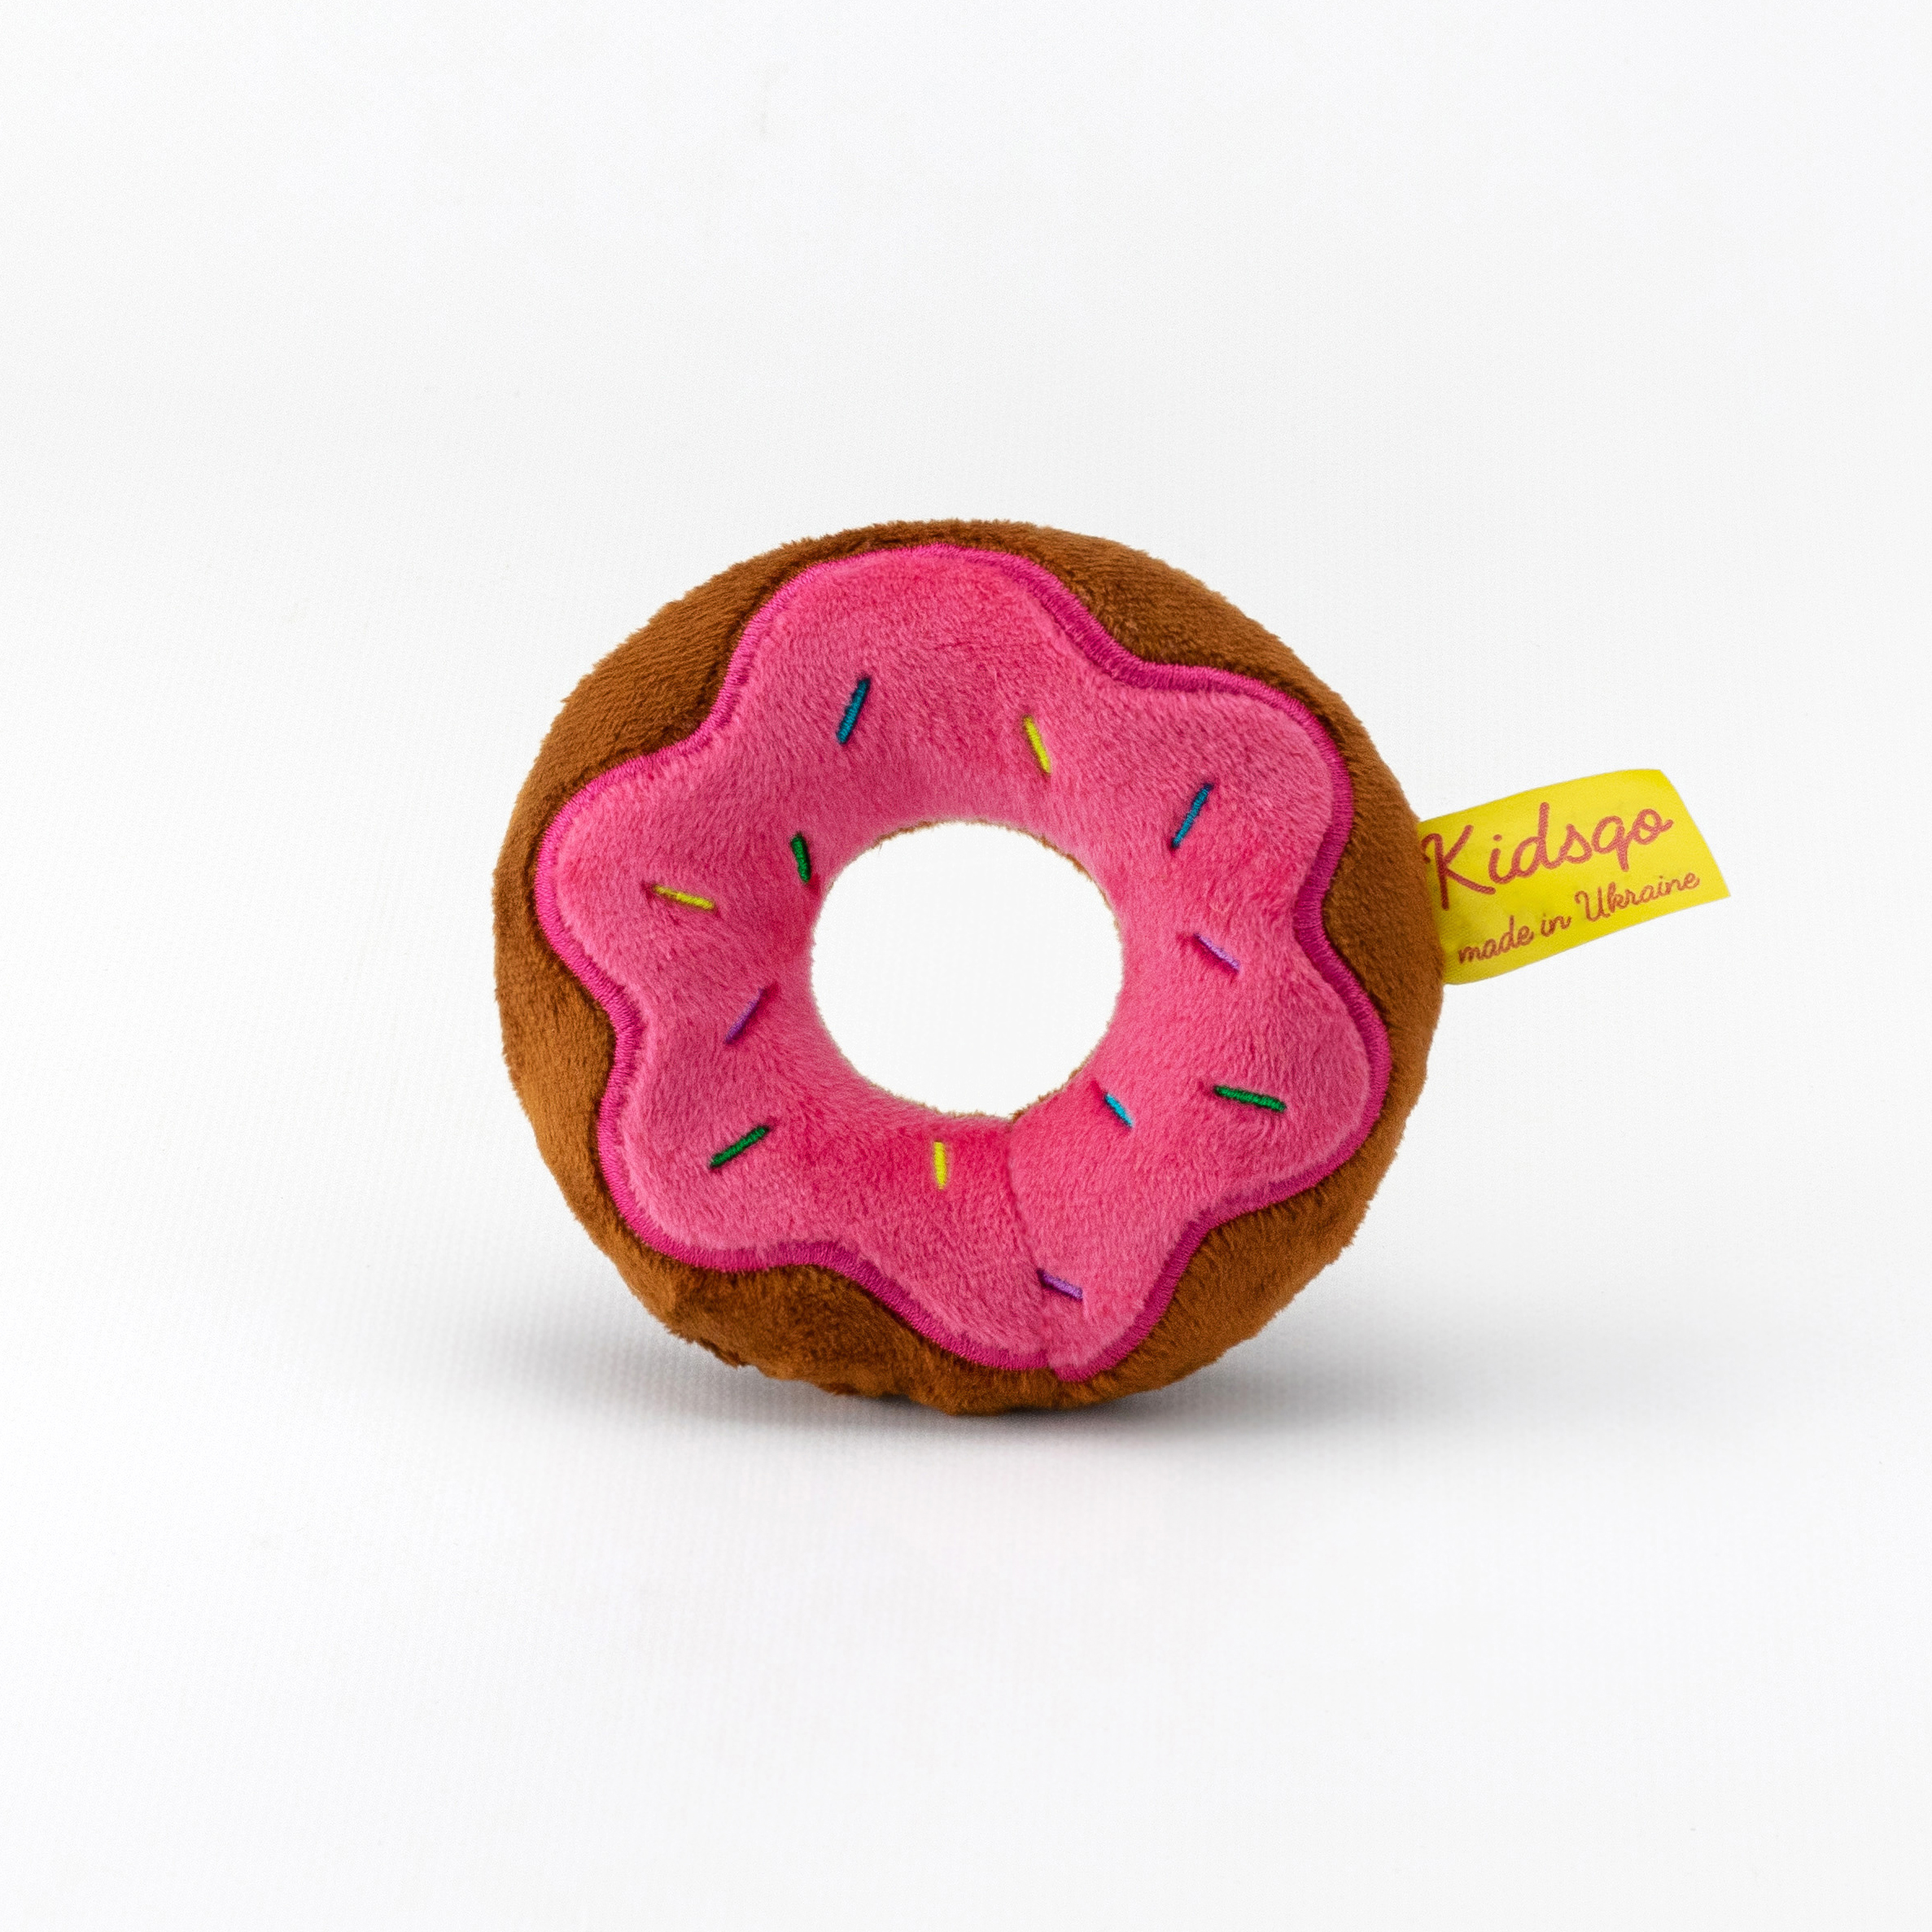 М'яка іграшка Kidsqo Пончик маленький Рожевий (KD6901)